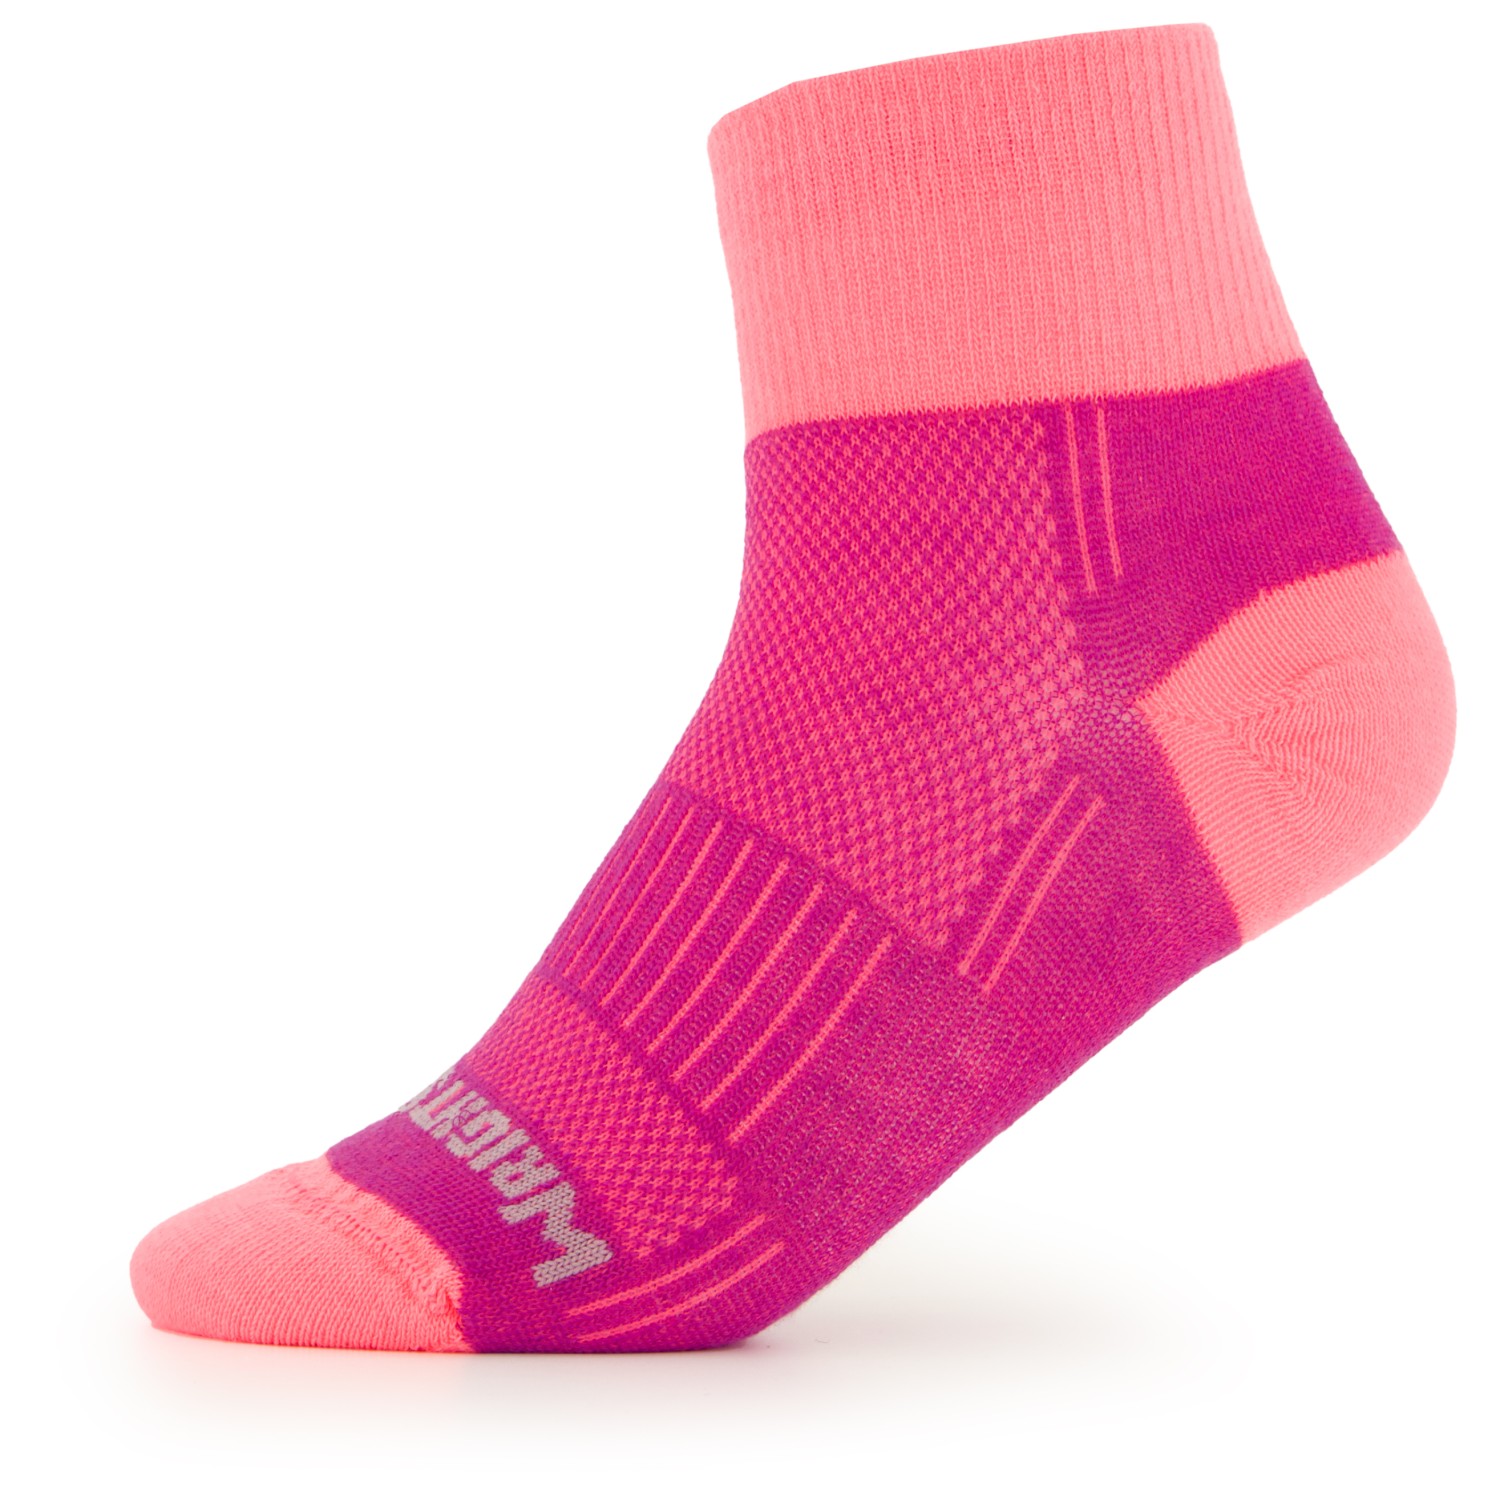 Походные носки Wrightsock Coolmesh II Quarter, цвет Plum/Pink баряева людмила борисовна азб дор дв пл 12 дв на велосипеде запрещено